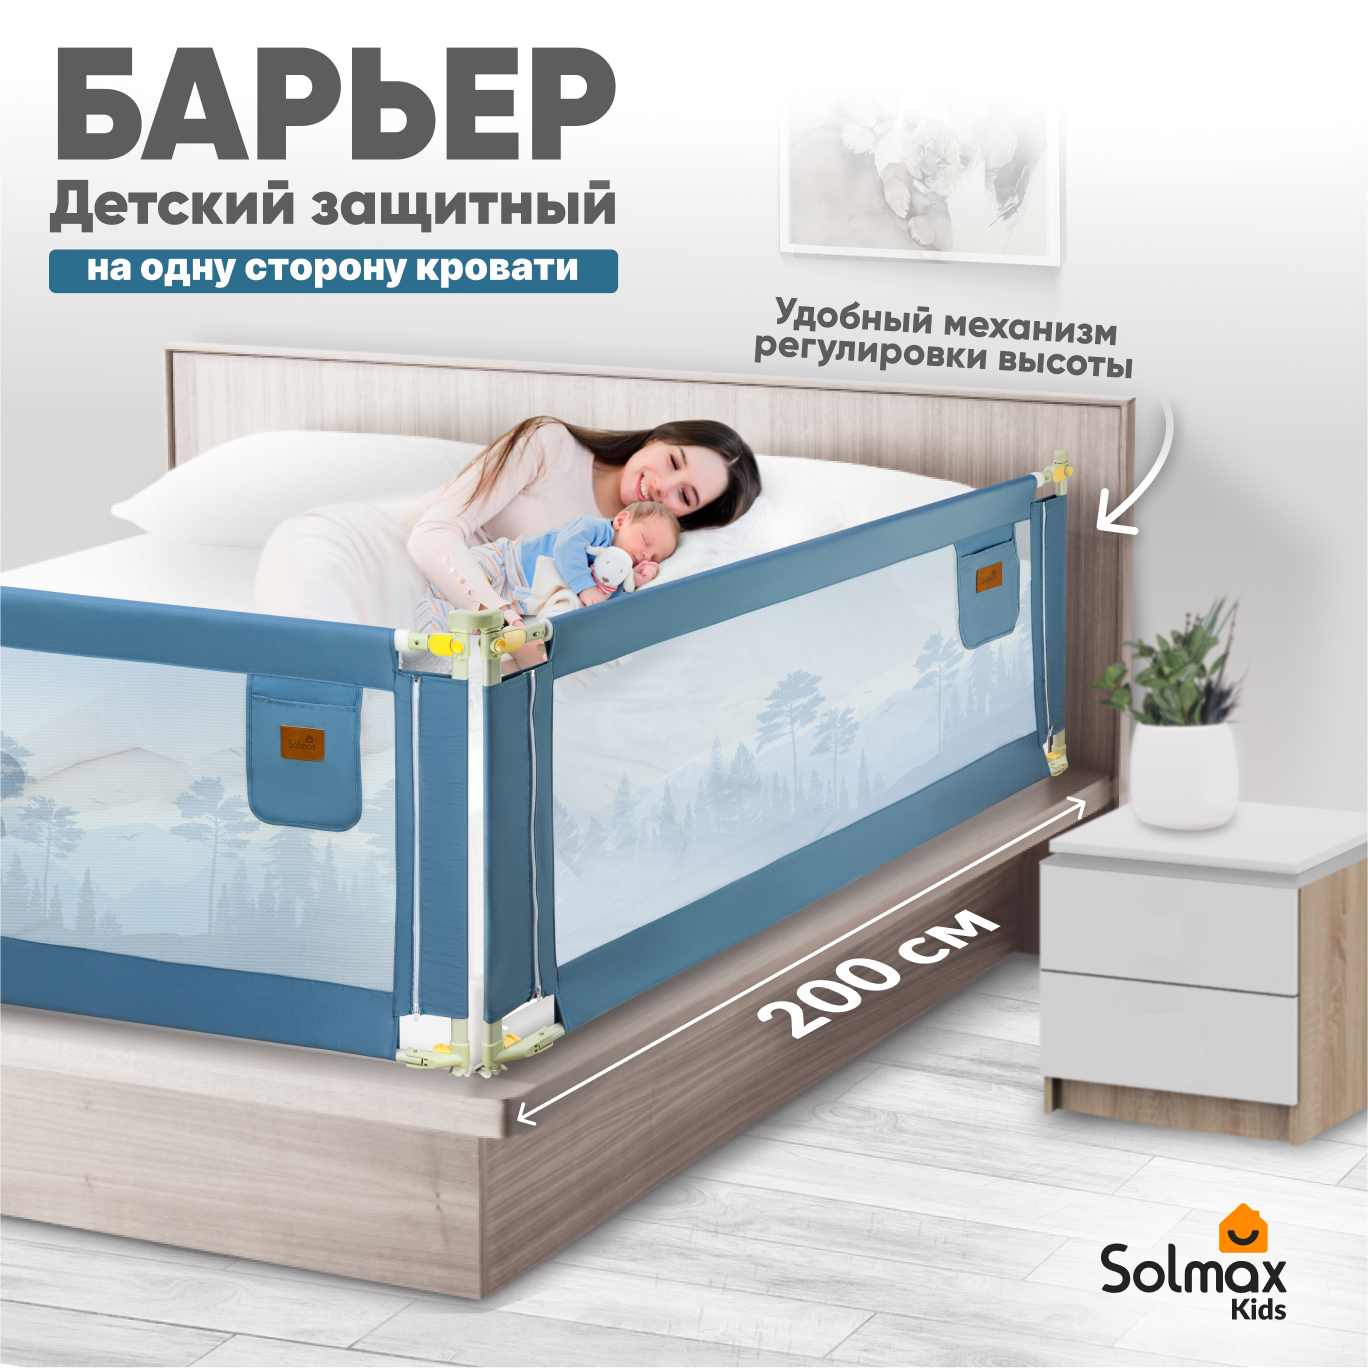 Барьер защитный для кровати от падений SOLMAX синий бортик в кроватку для малыша 200 см барьер защитный для кровати от падений solmax зеленый бортик в кроватку малыша 200 см